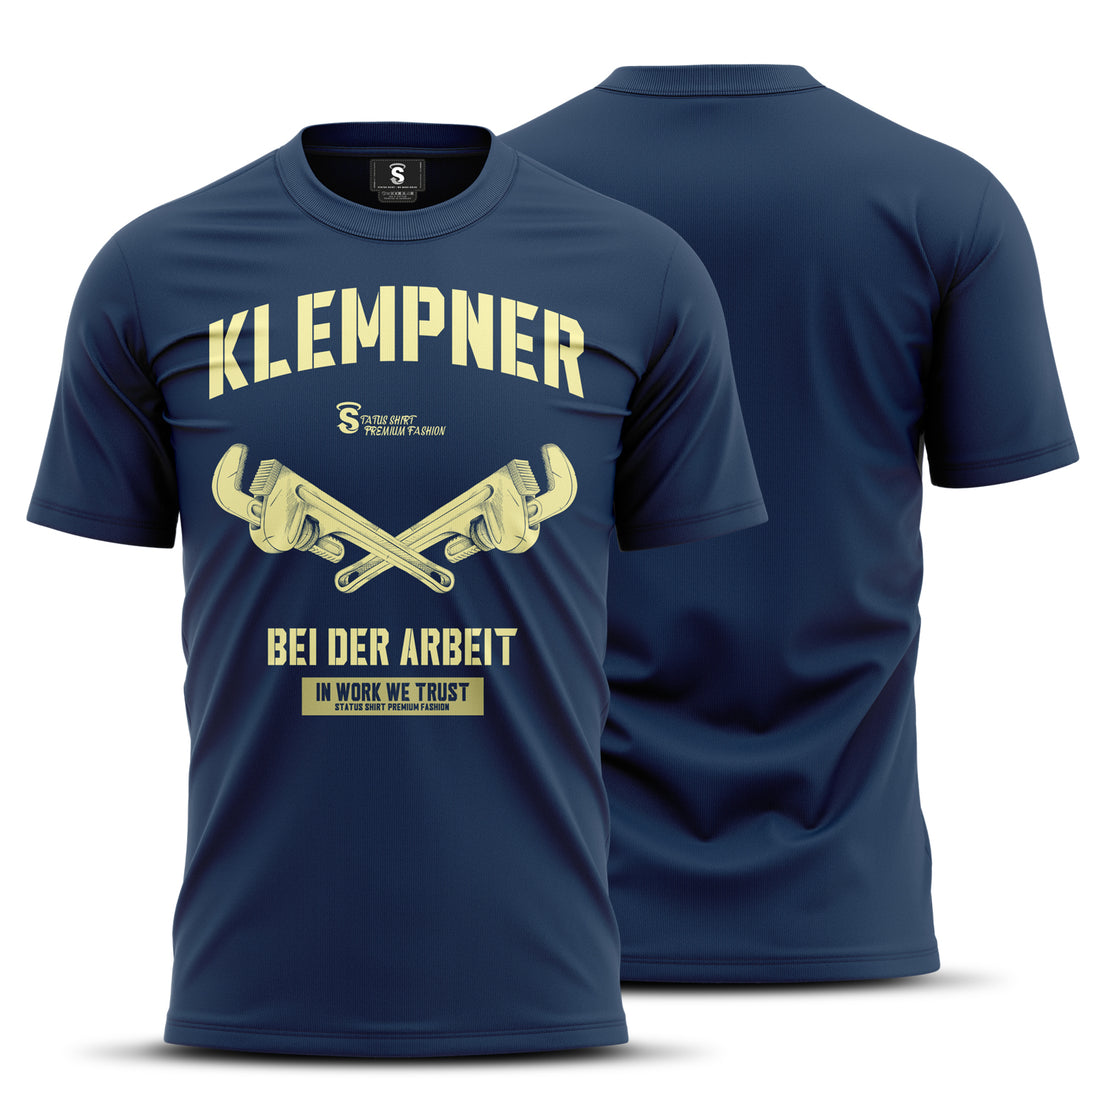 Das Klempner T-Shirt - Ein tolles Geschenk für kreative Rohrverleger und Wassermeister!